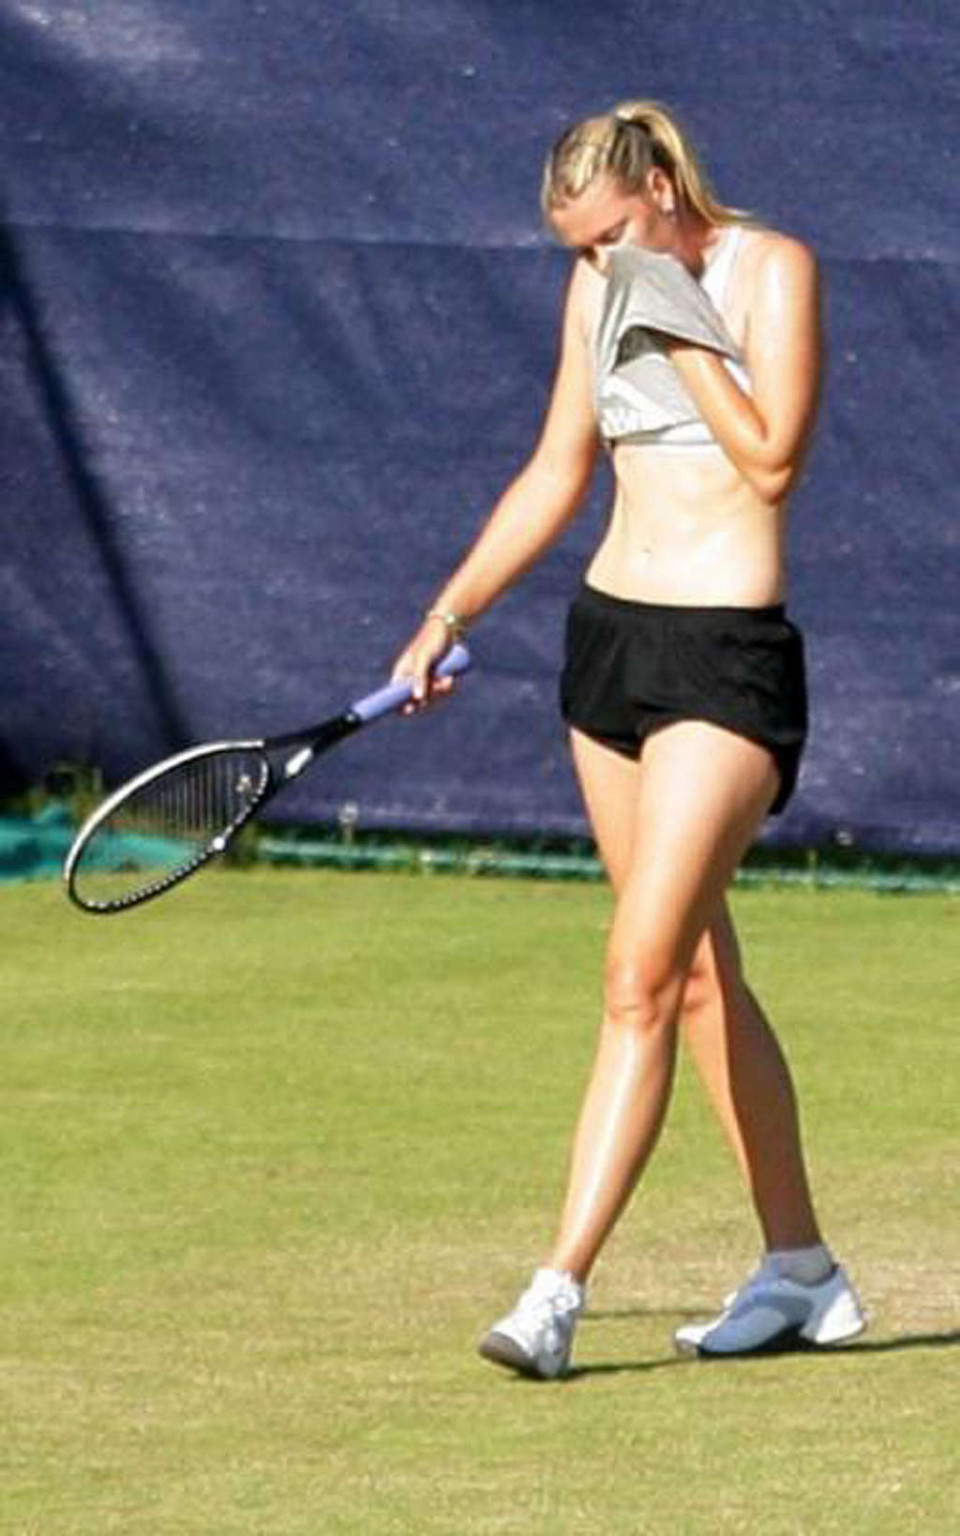 Maria Sharapova nipple slip while play tennis paparazzi shoots #75346428